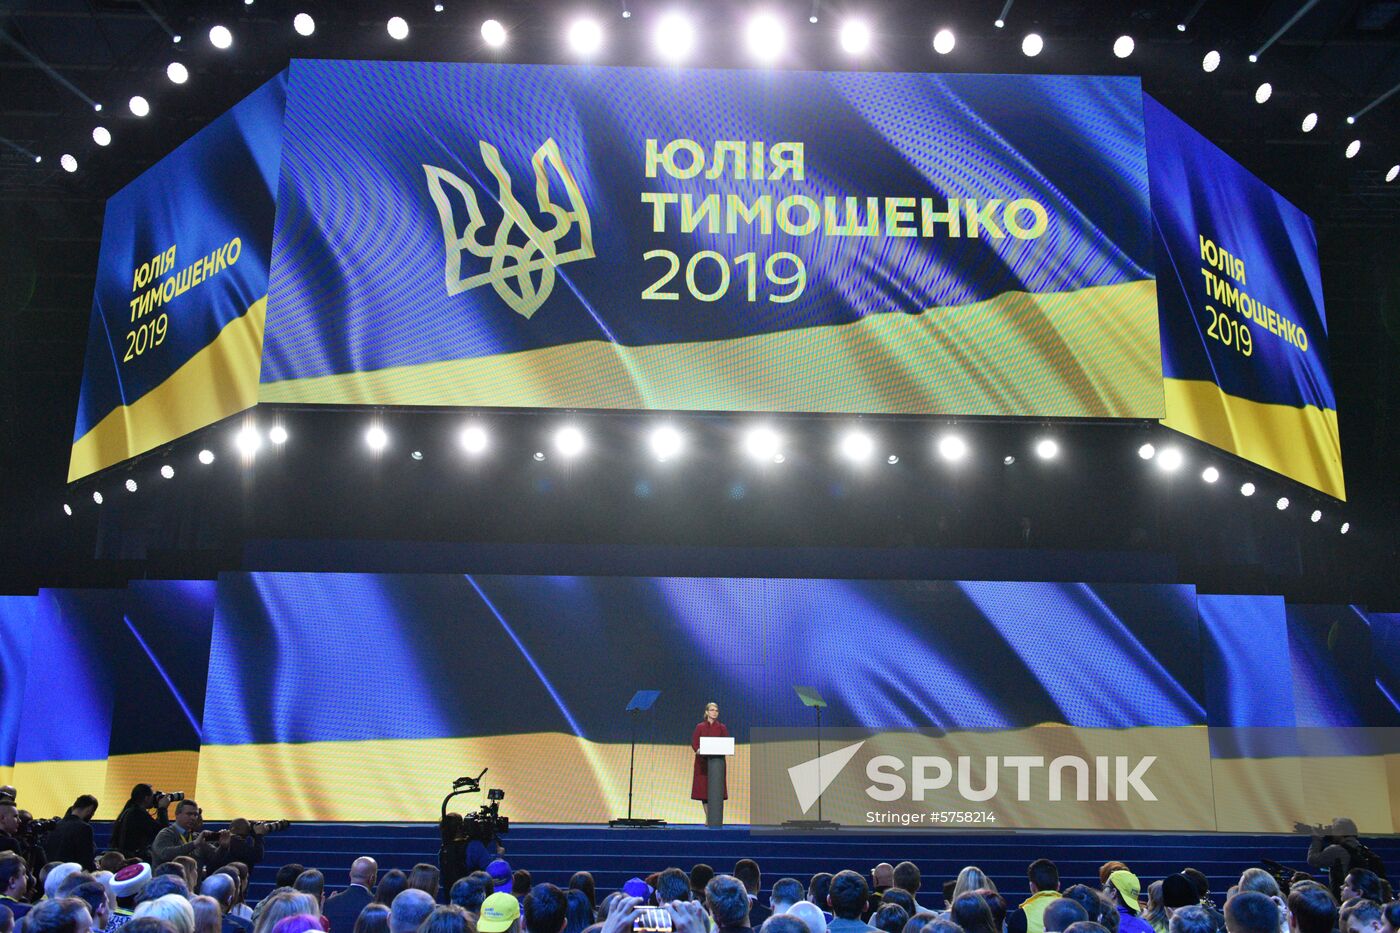 Ukraine Presidential Elections 